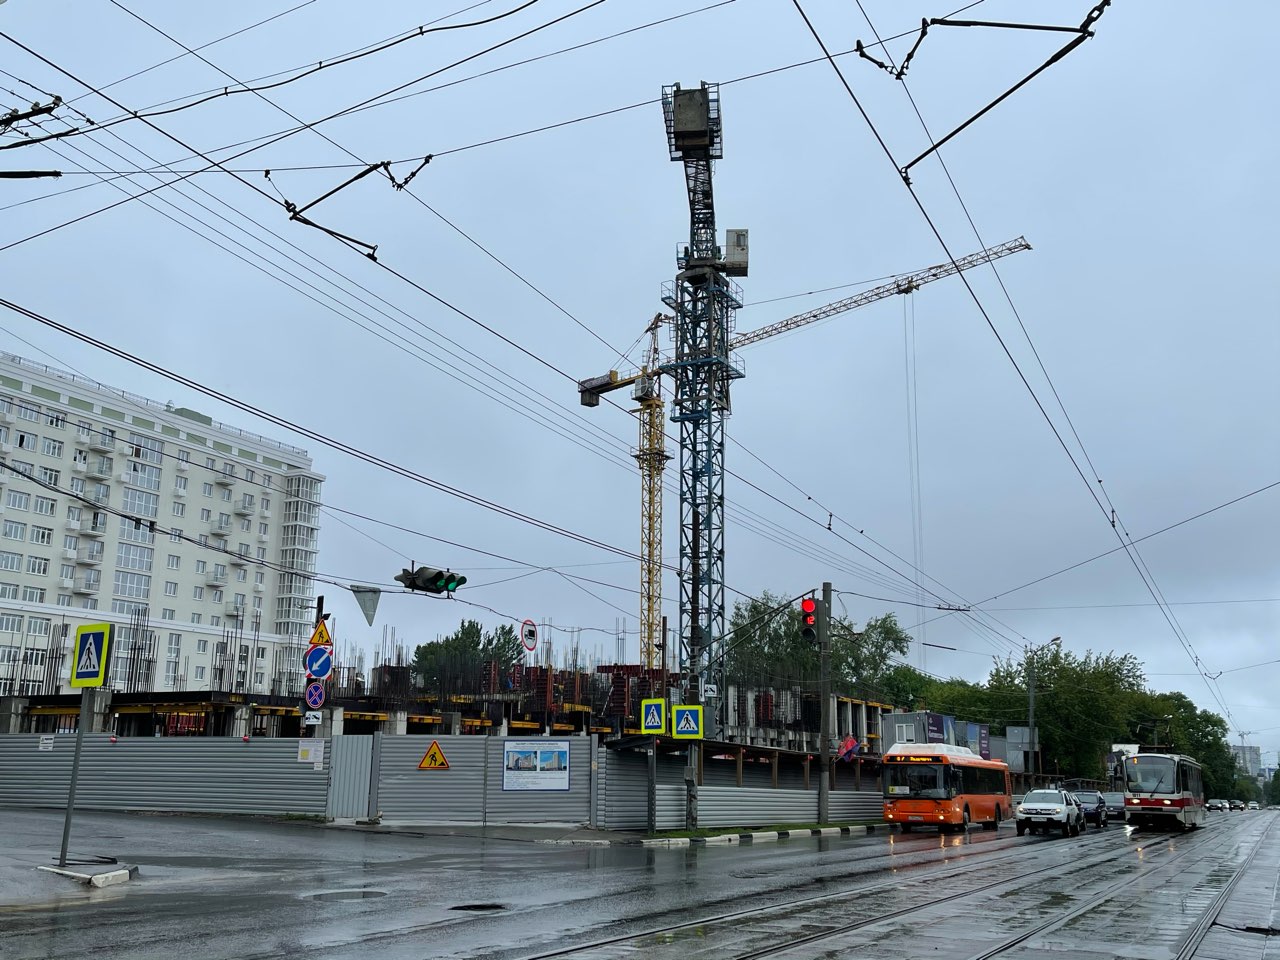 Нижний Новгород планируют перевести на экологичный общественный транспорт